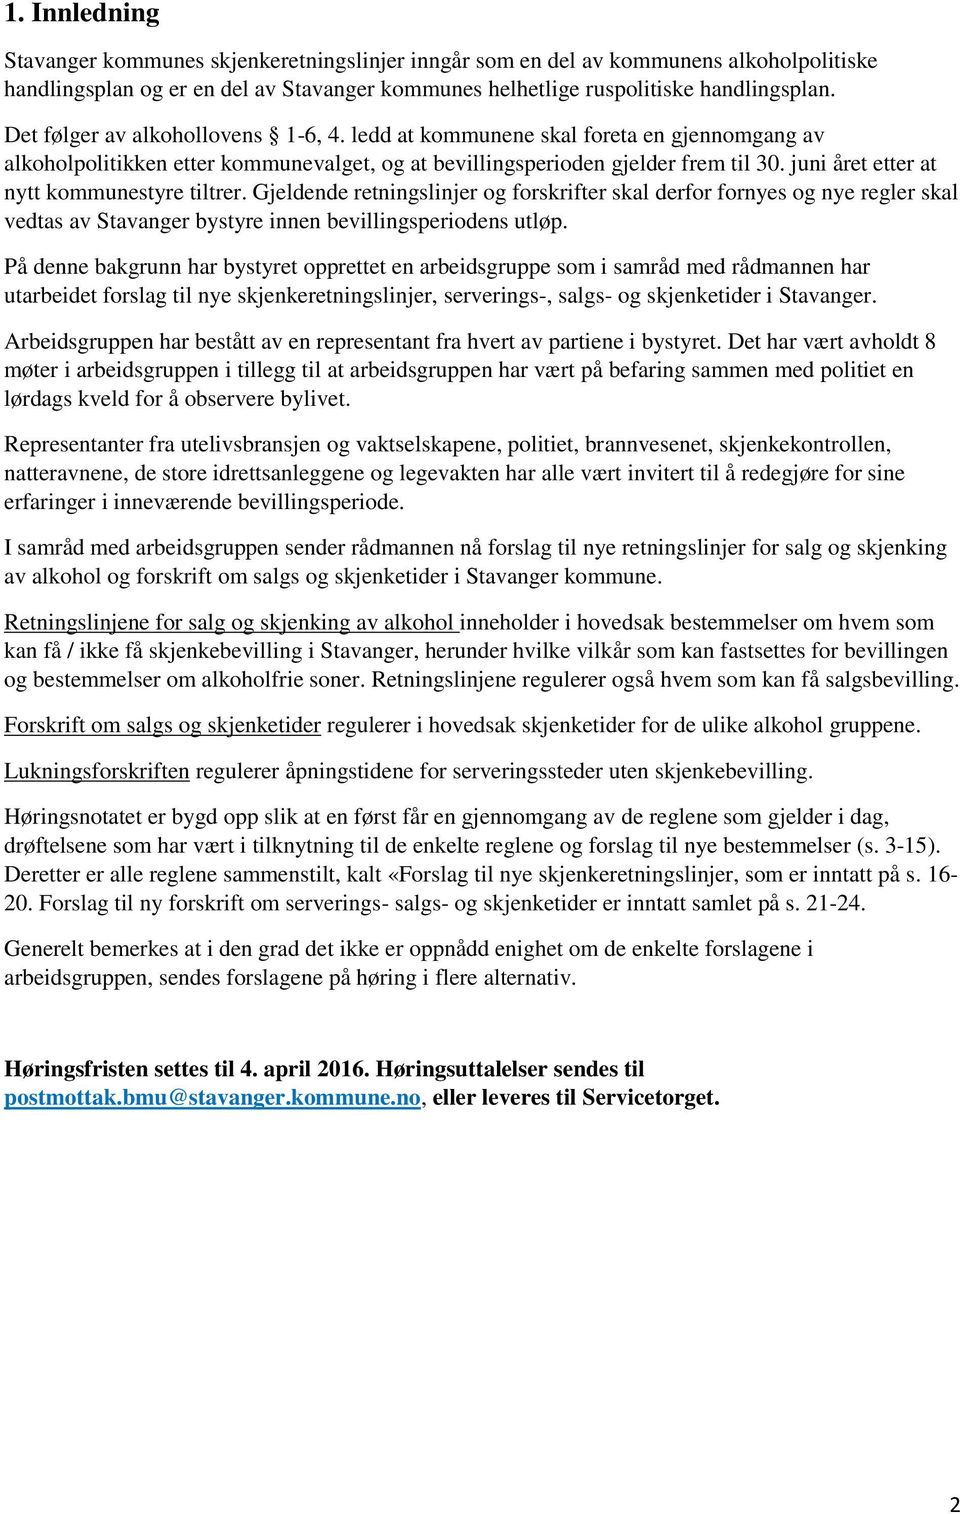 juni året etter at nytt kommunestyre tiltrer. Gjeldende retningslinjer og forskrifter skal derfor fornyes og nye regler skal vedtas av Stavanger bystyre innen bevillingsperiodens utløp.